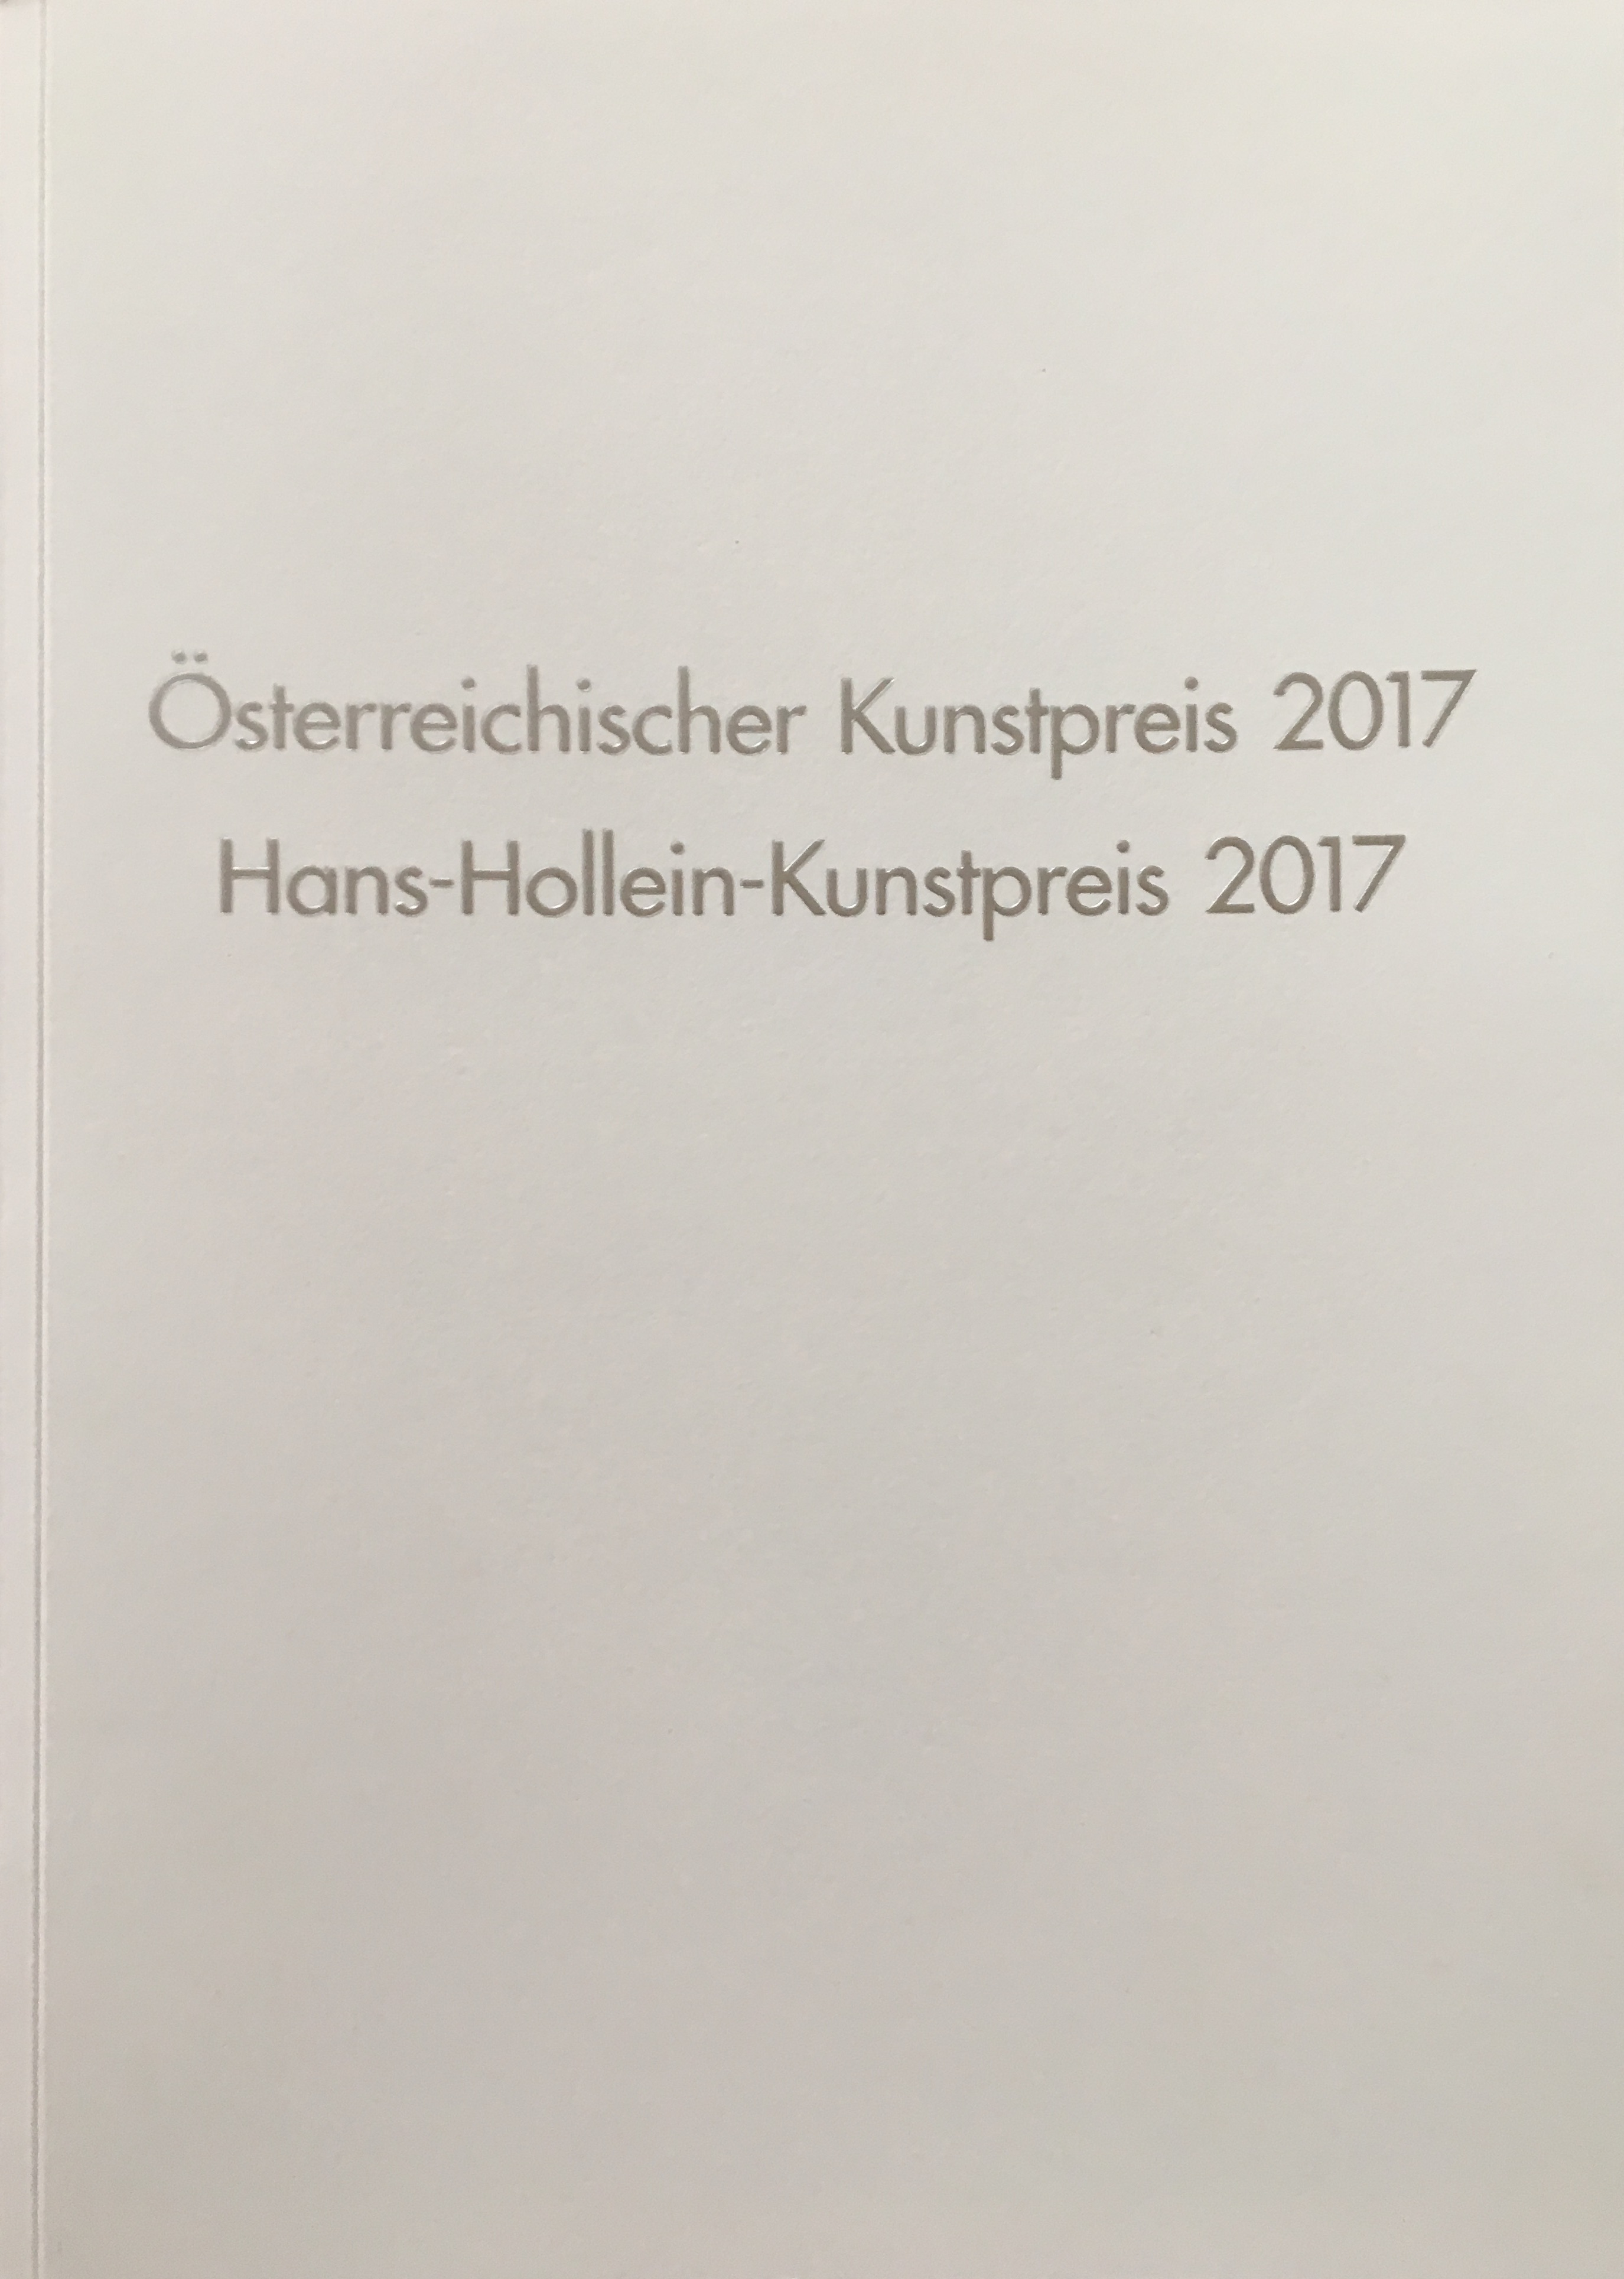 Österreichischer Kunstpreis 2017 | Hans-Hollein-Kunstpreis 2017